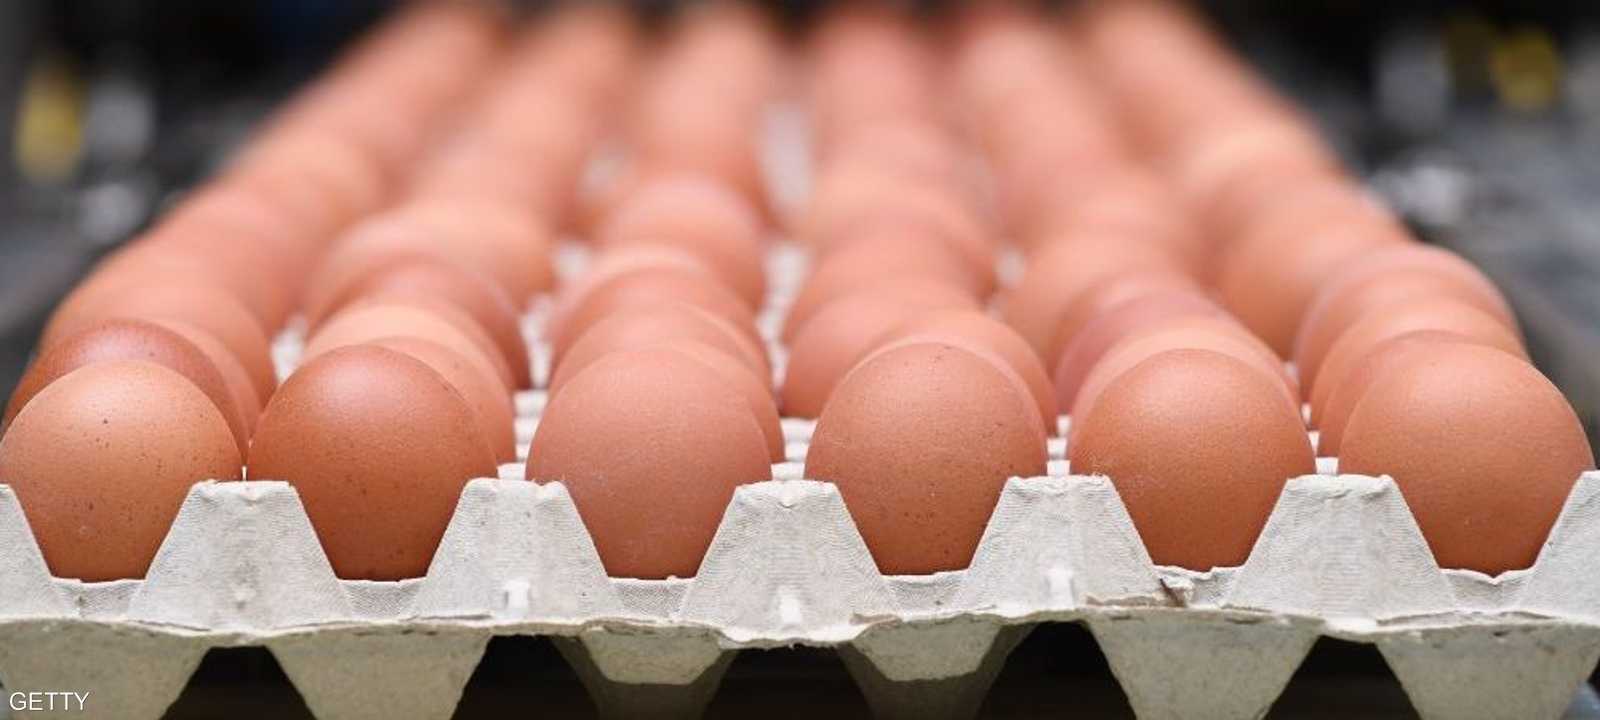 قيود التنقل أثرت على تجارة البيض